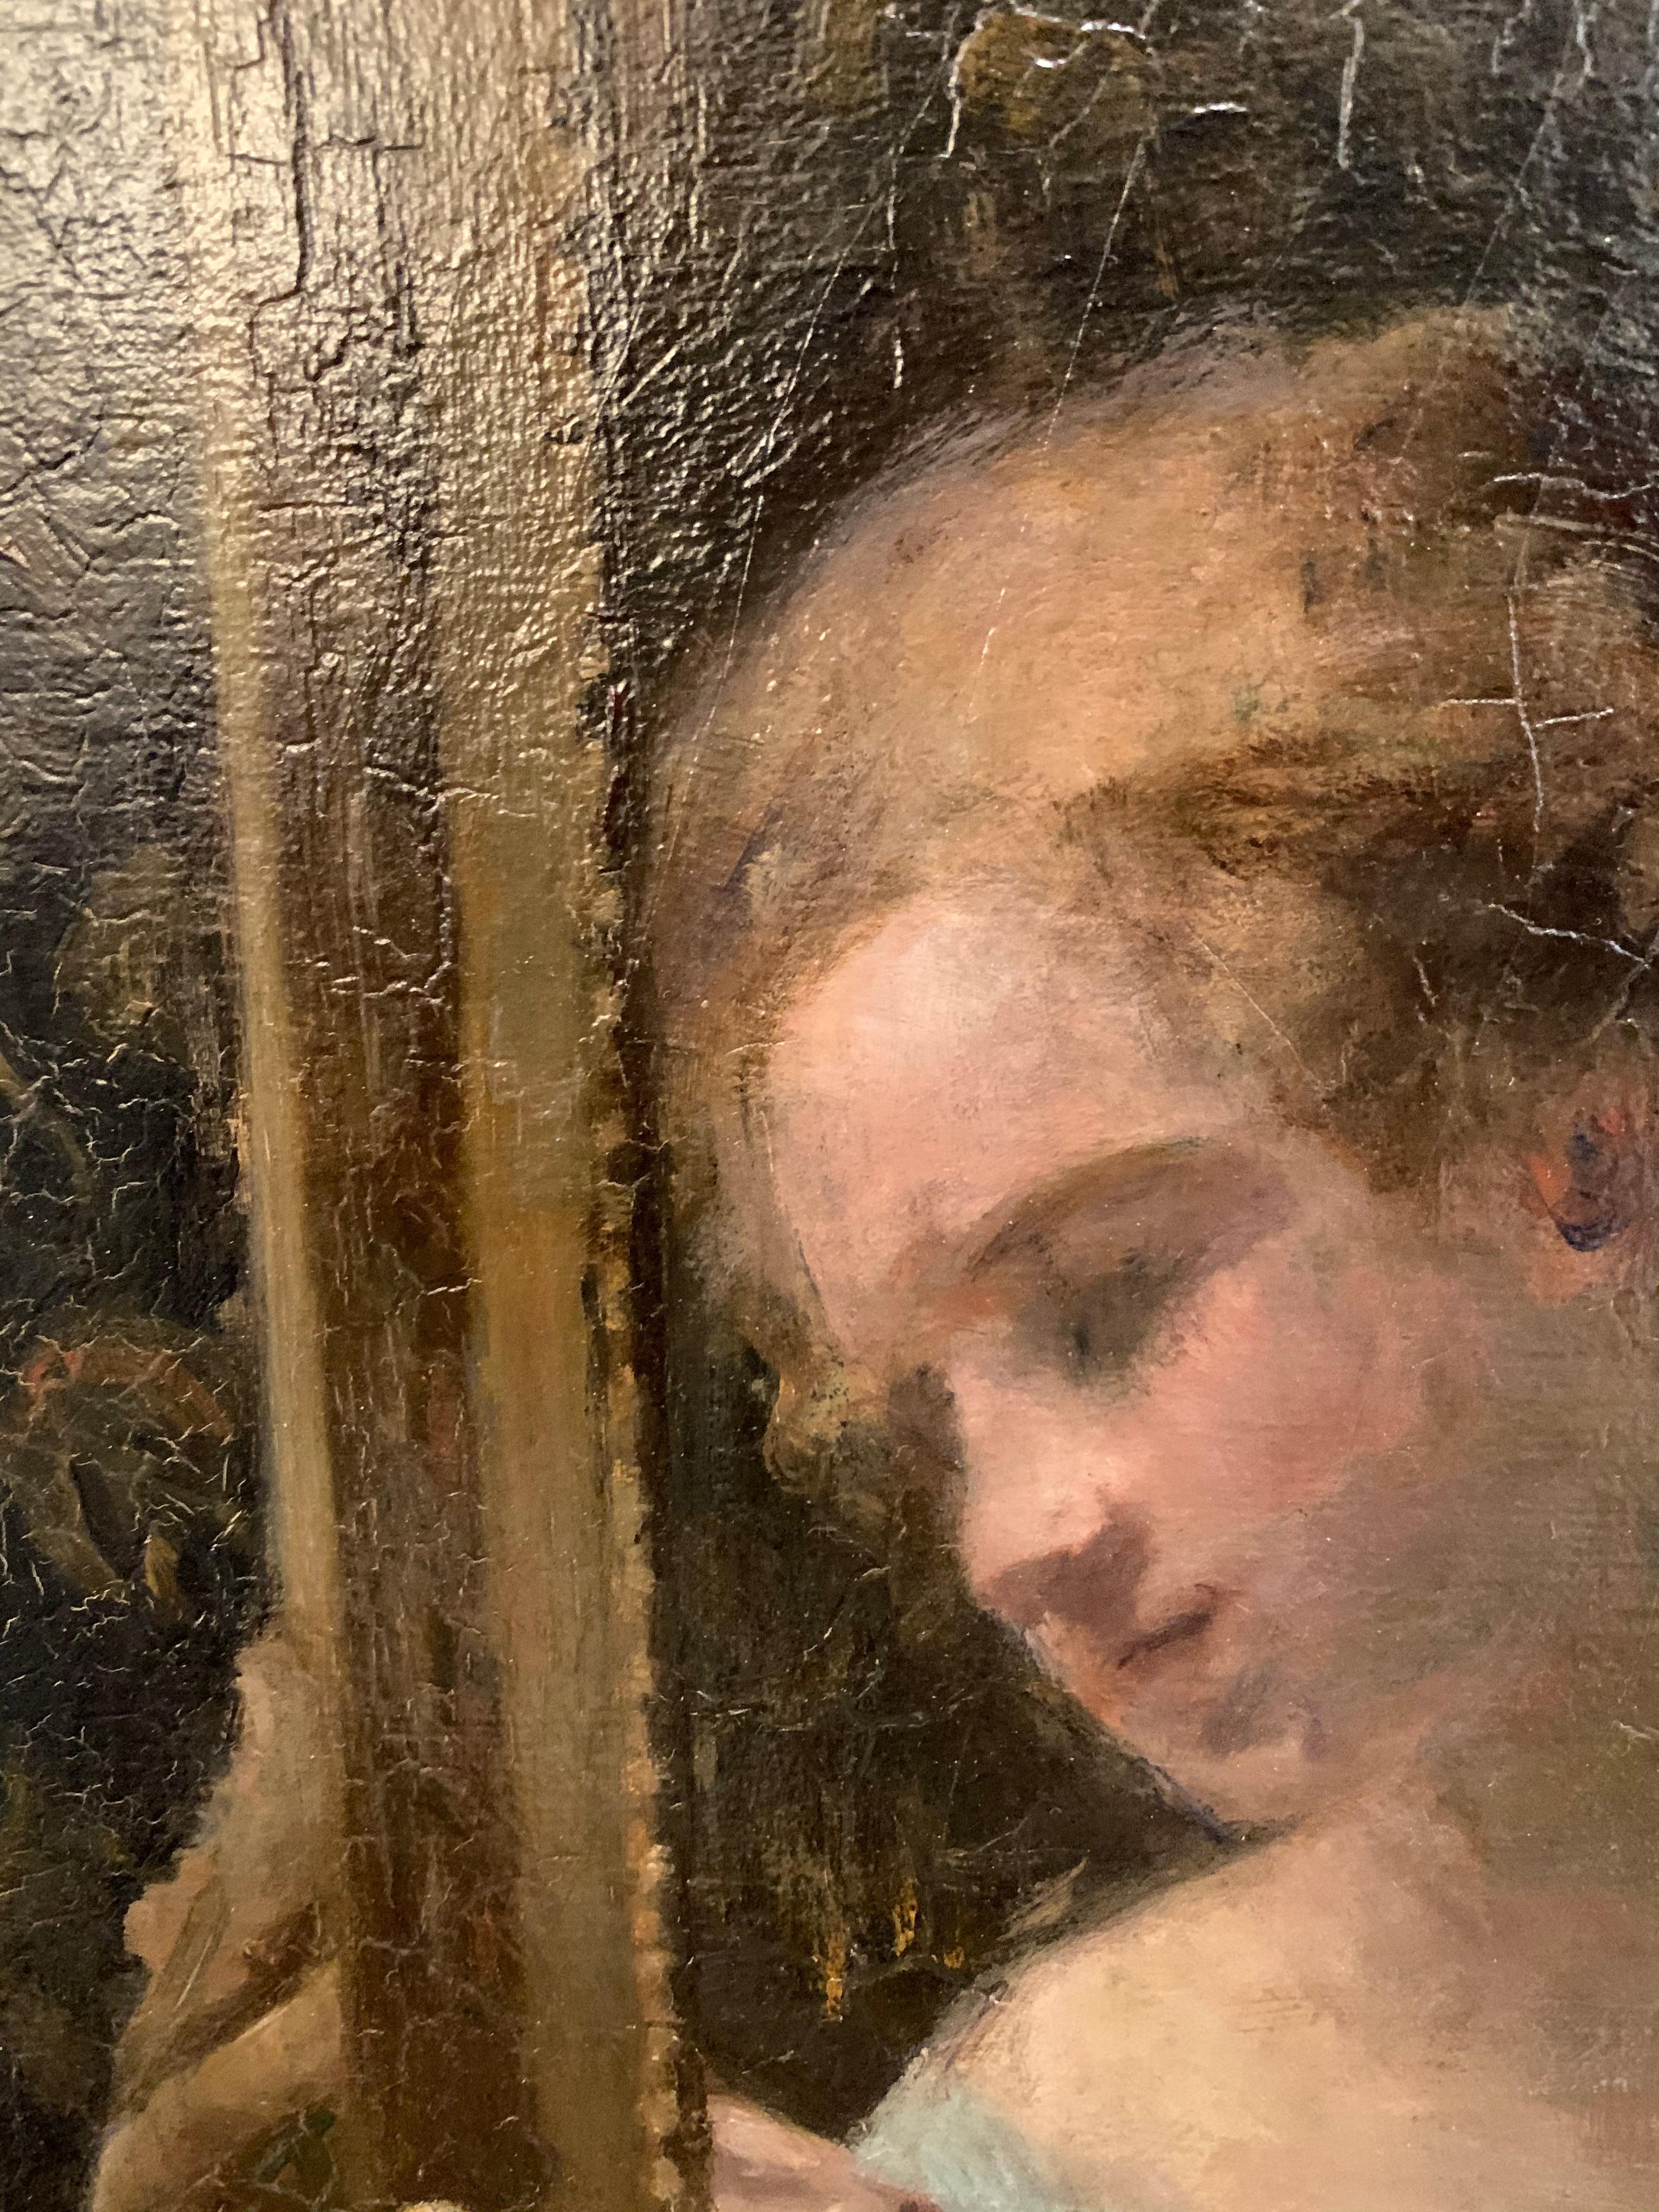 Es handelt sich um ein lebensgroßes impressionistisches Gemälde aus dem 19. Jahrhundert von der Künstlerin Suzanne Hurel (1876-1956). Es zeigt eine junge Frau, die in ihrem Boudoir vor einem Spiegel sitzt und ein Bild betrachtet. Sie trägt ein